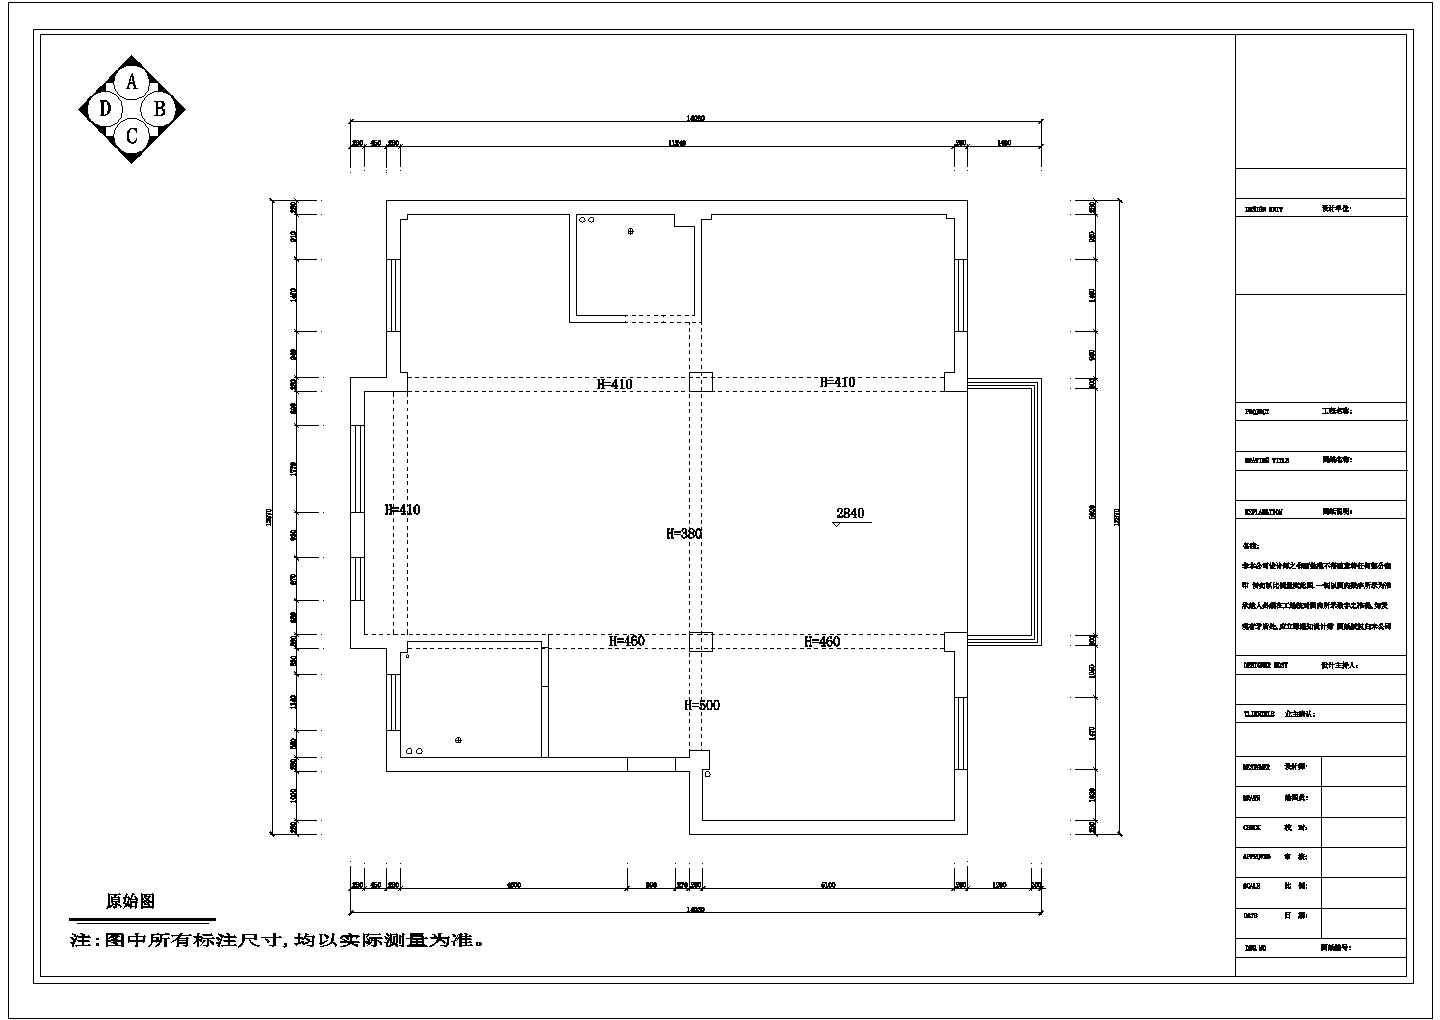 山东省济南市某某装饰公司办公室整体装修设计CAD图纸